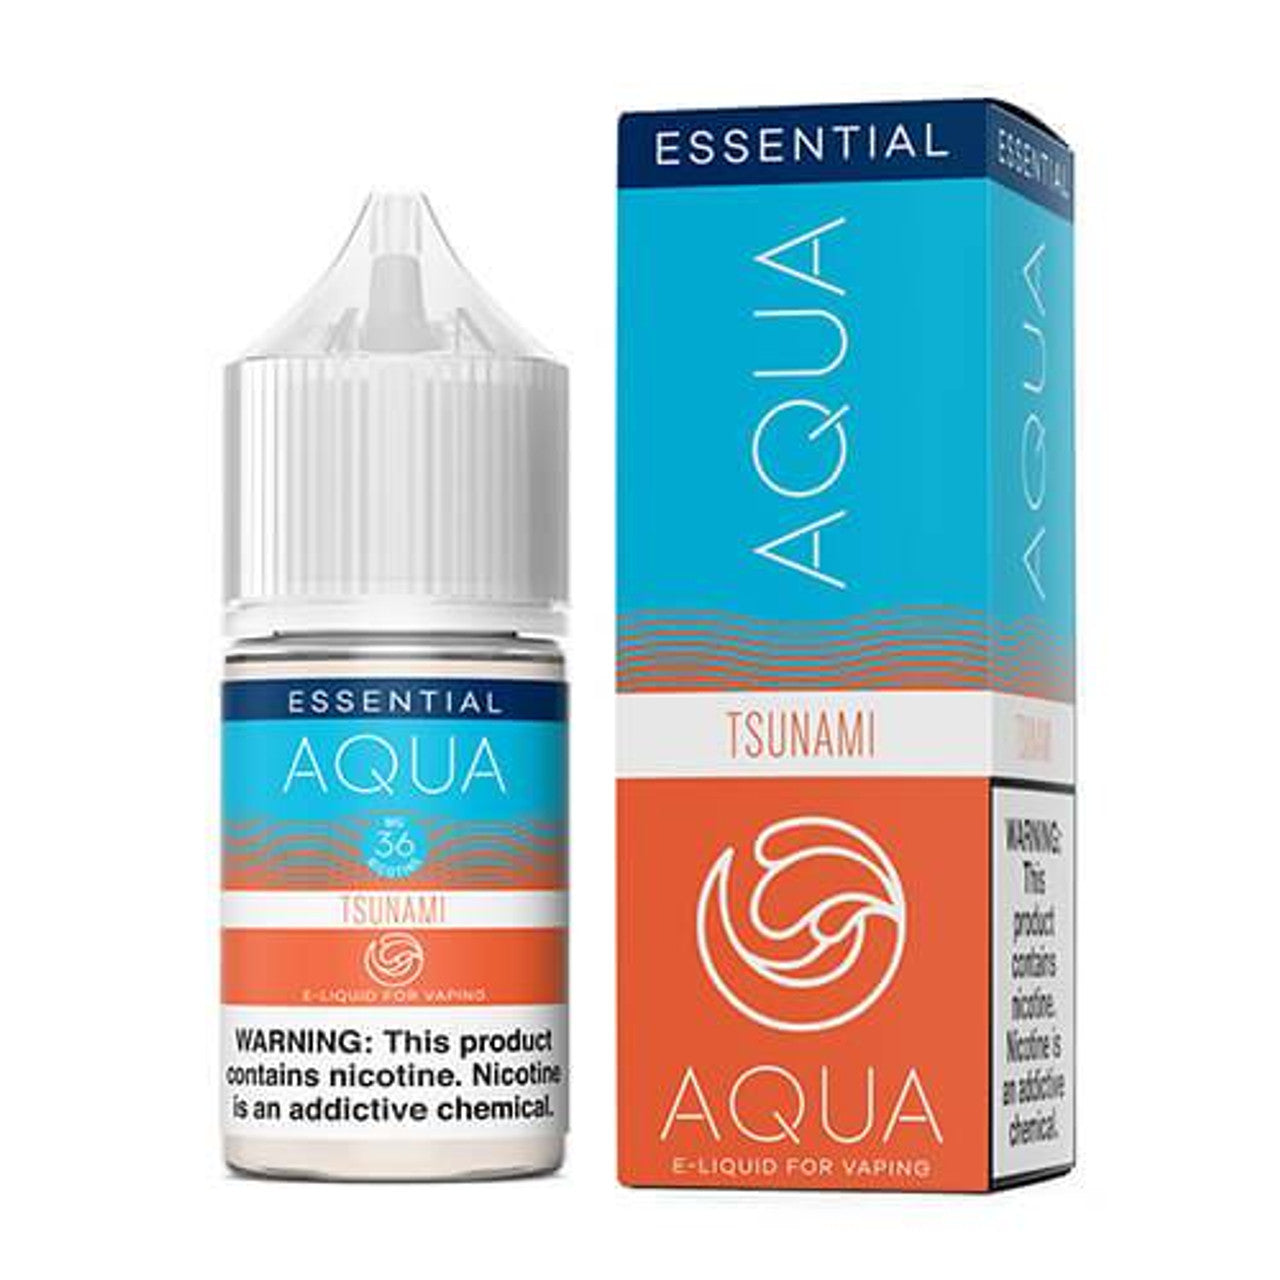 Aqua Salt Series E-Liquid 30mL (Salt Nic) | Tsunami with packaging